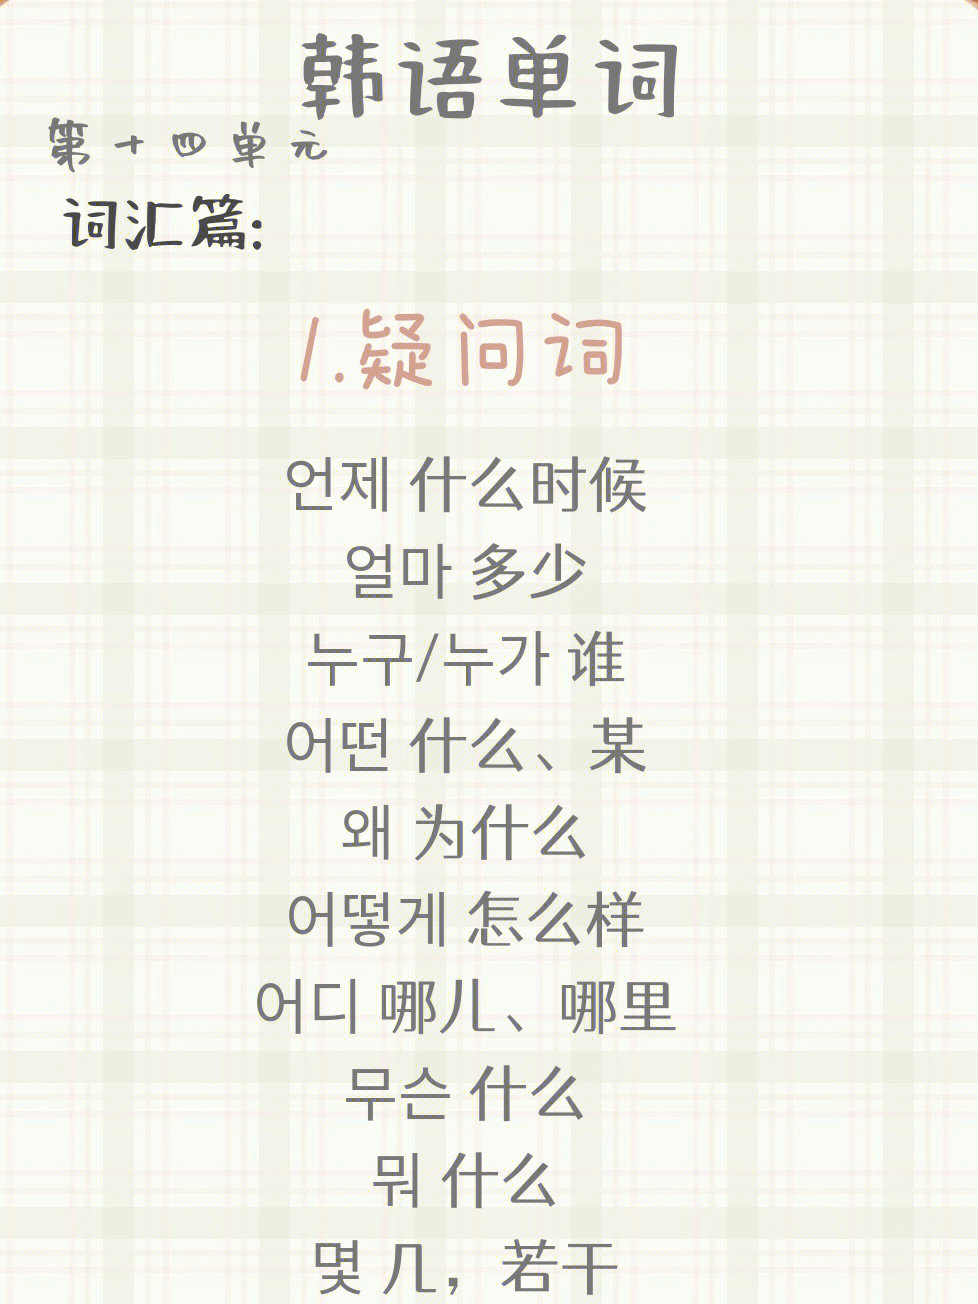 10月29日如何记住单词的构成韩语单词基本由中国的汉字词,分为外来词